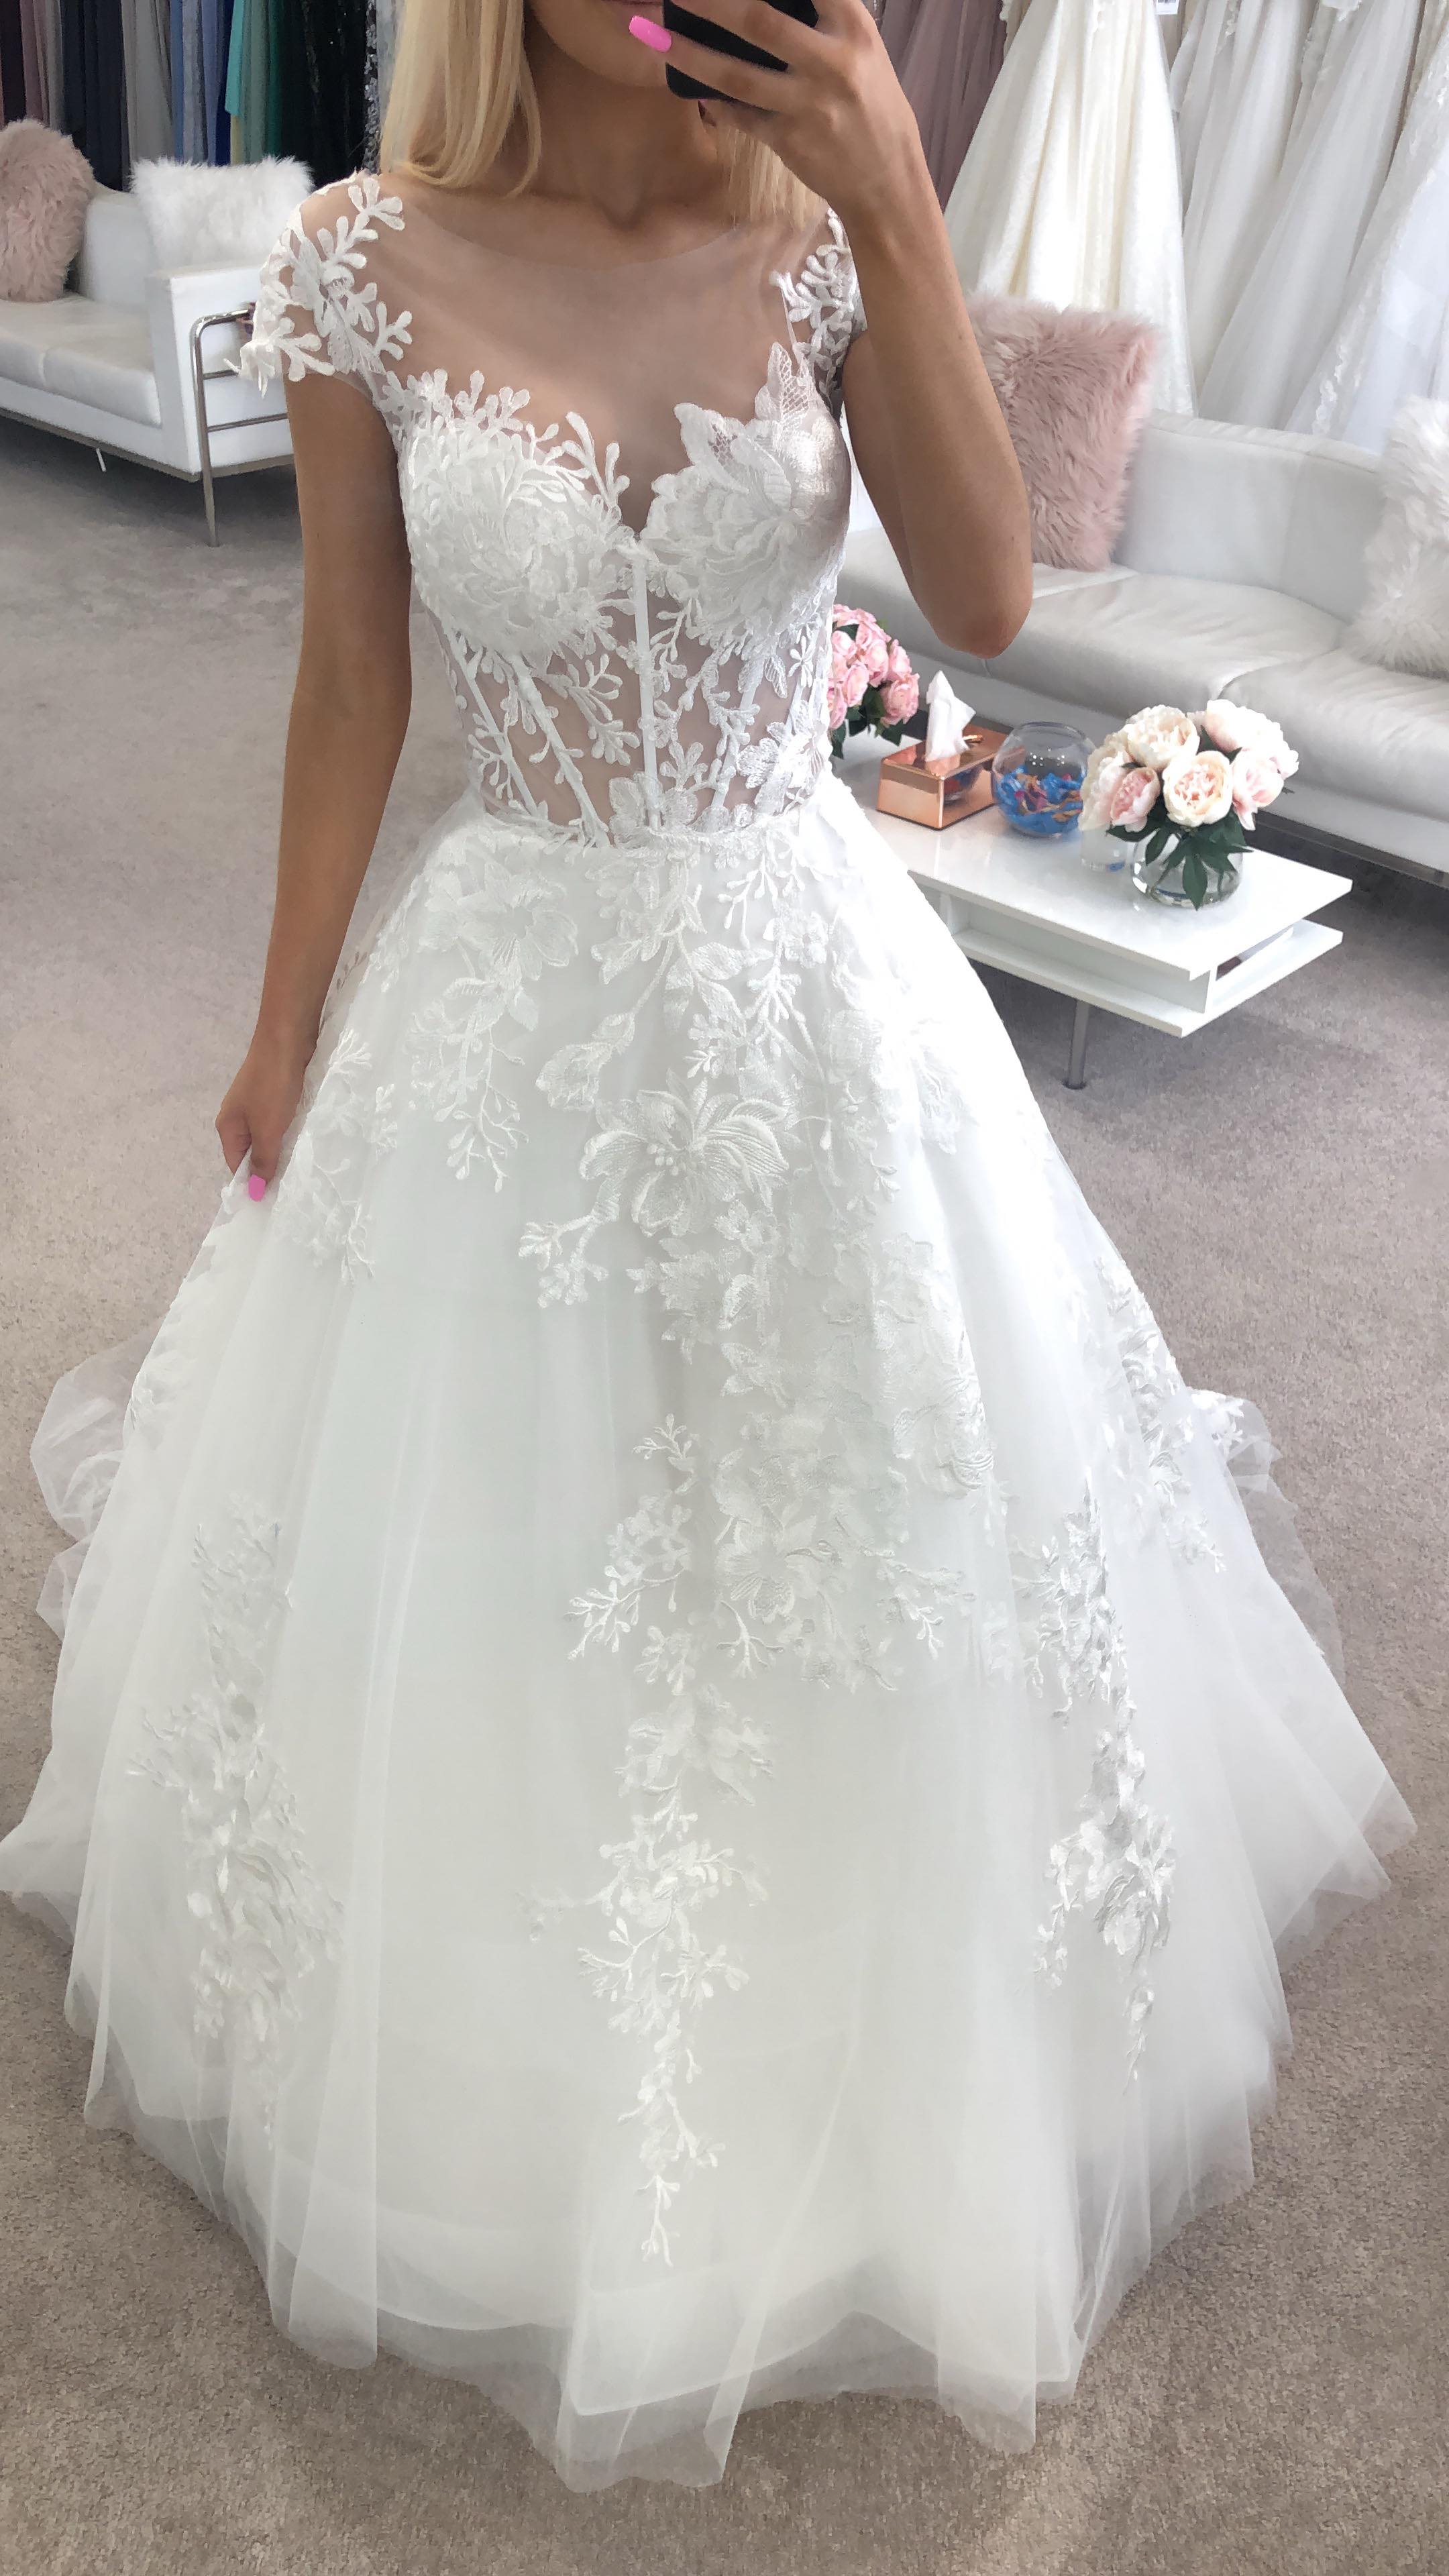 Alessia 18116 Calla Blanche Bridal Wedding Gowns Online Australia Sydney brisbane adelaide perth canberra